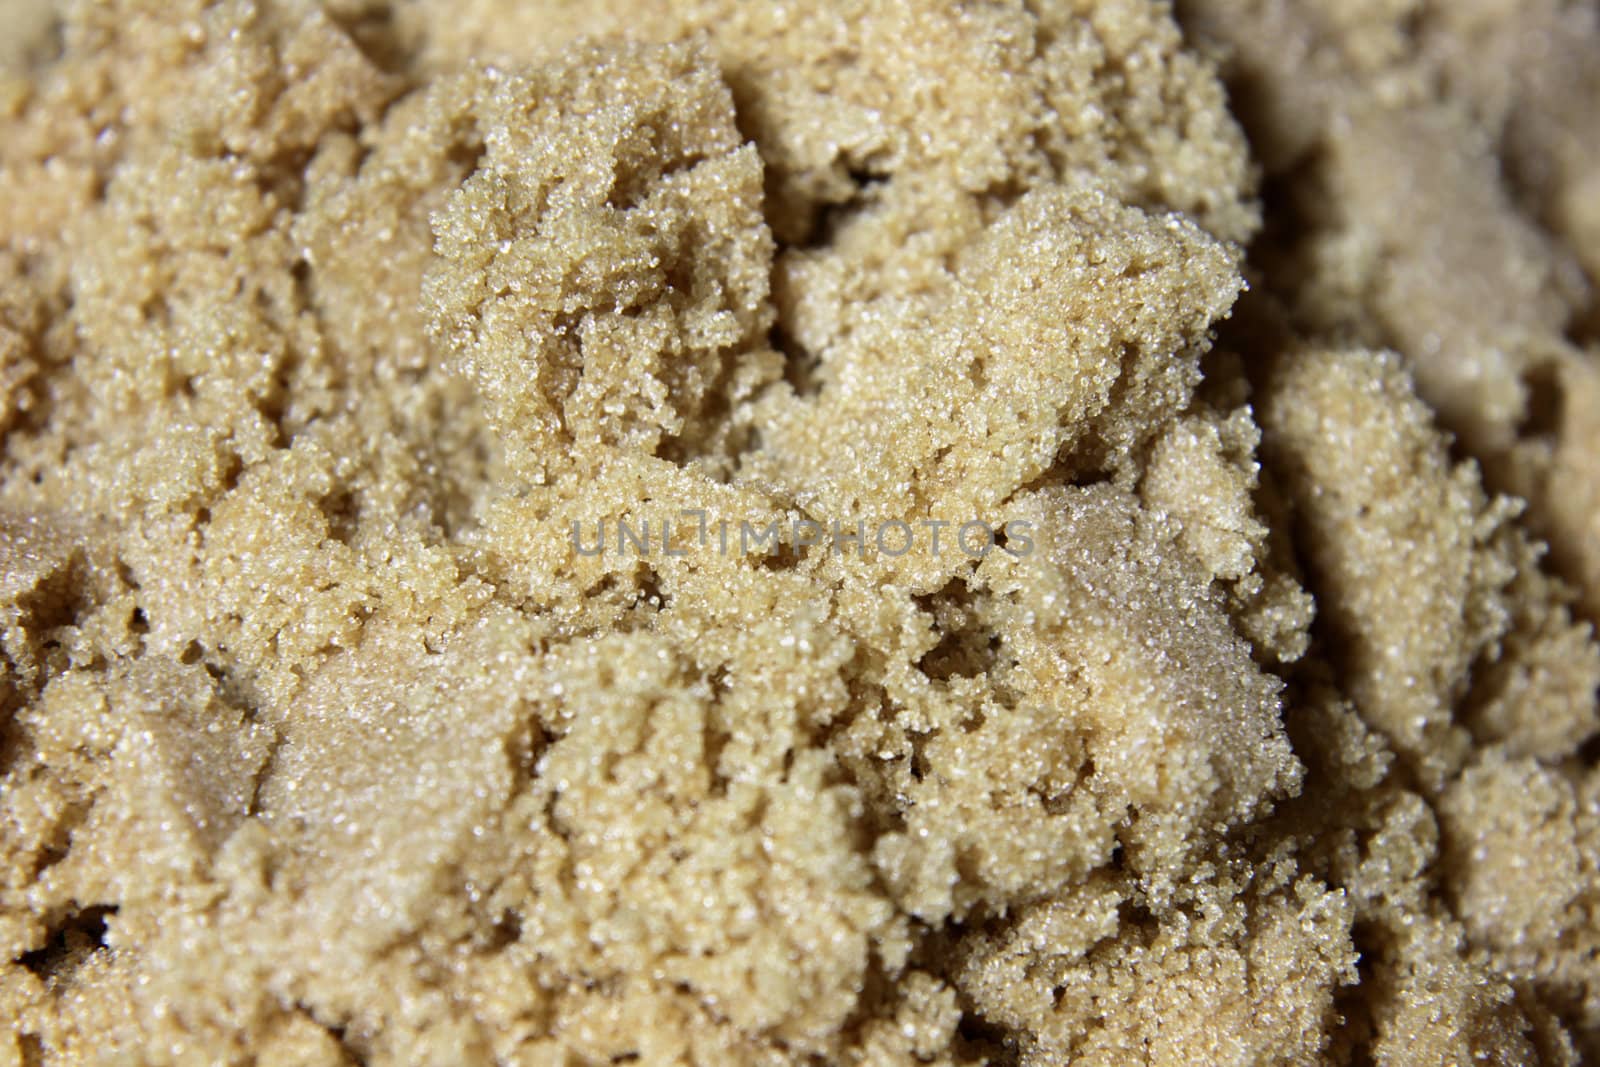 A close-up of brown sugar crystals.
